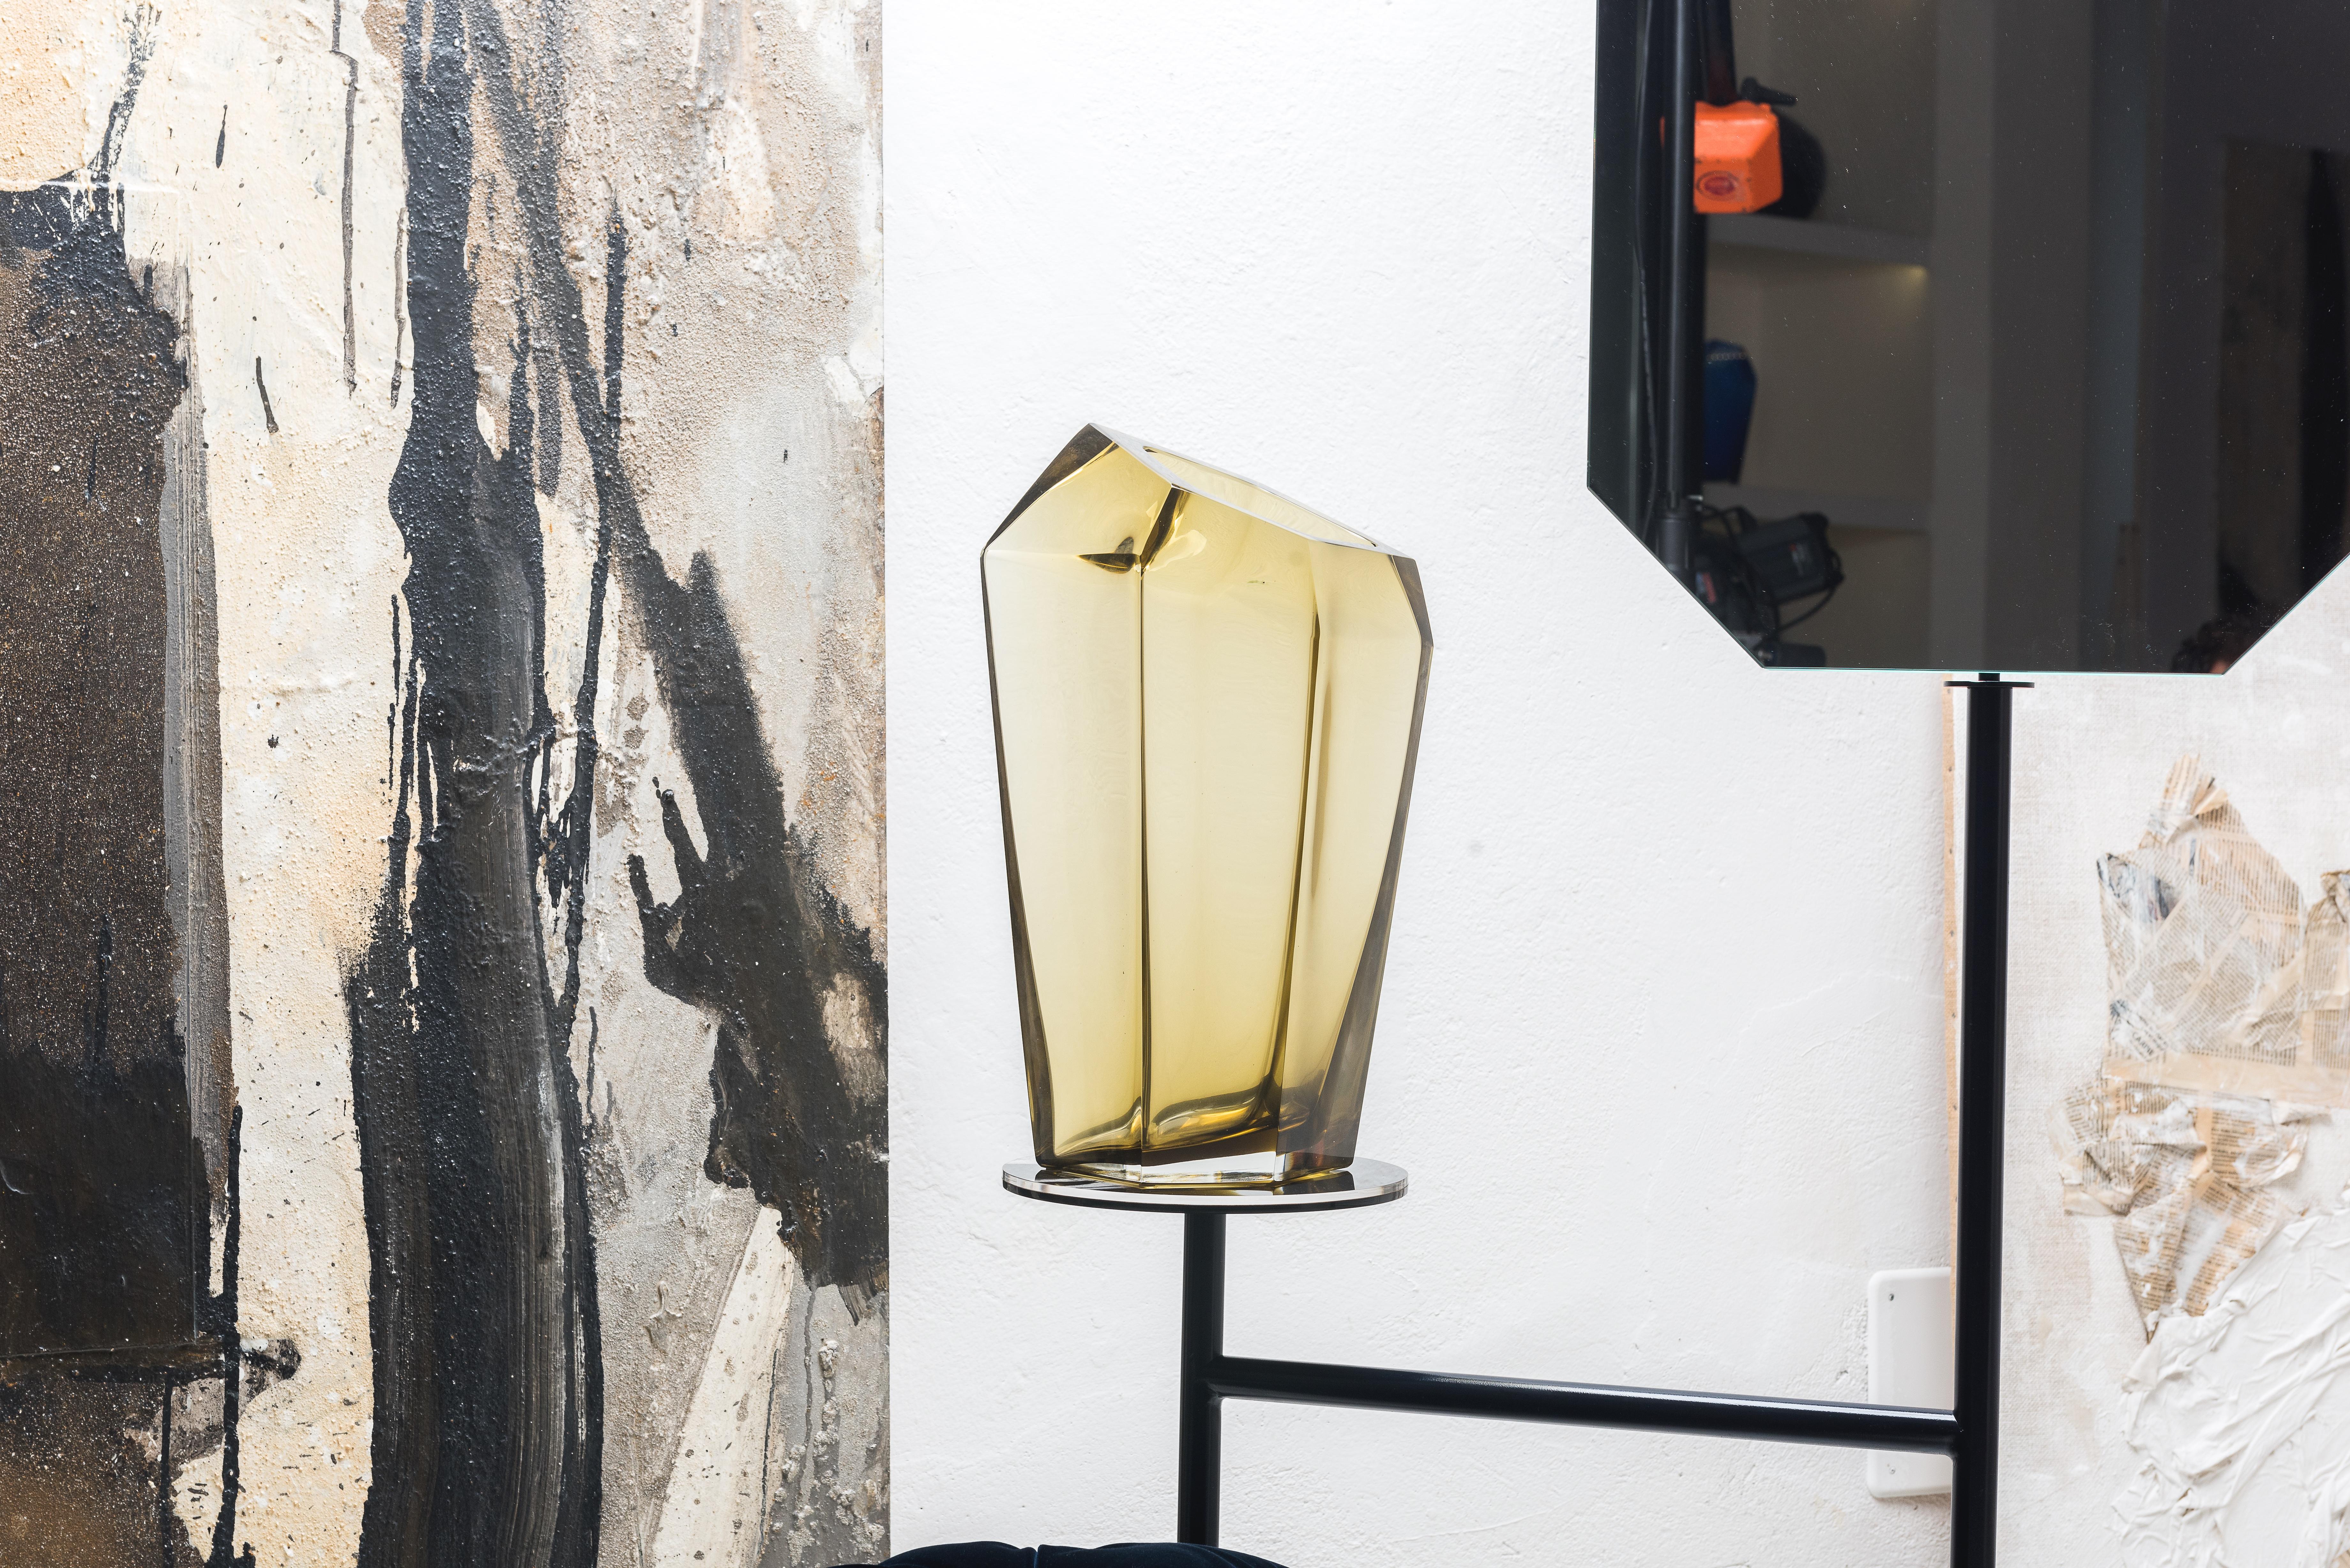 Kastle, extra große Vase, Muranoglas, von Karim Rashid, 21. Jahrhundert.
Karim Rashid hat für Purho eine Mini-Kollektion von Schalen und Vasen entworfen, die sich durch ihre facettierte, strukturelle Form und abstrakte Eleganz auszeichnen.